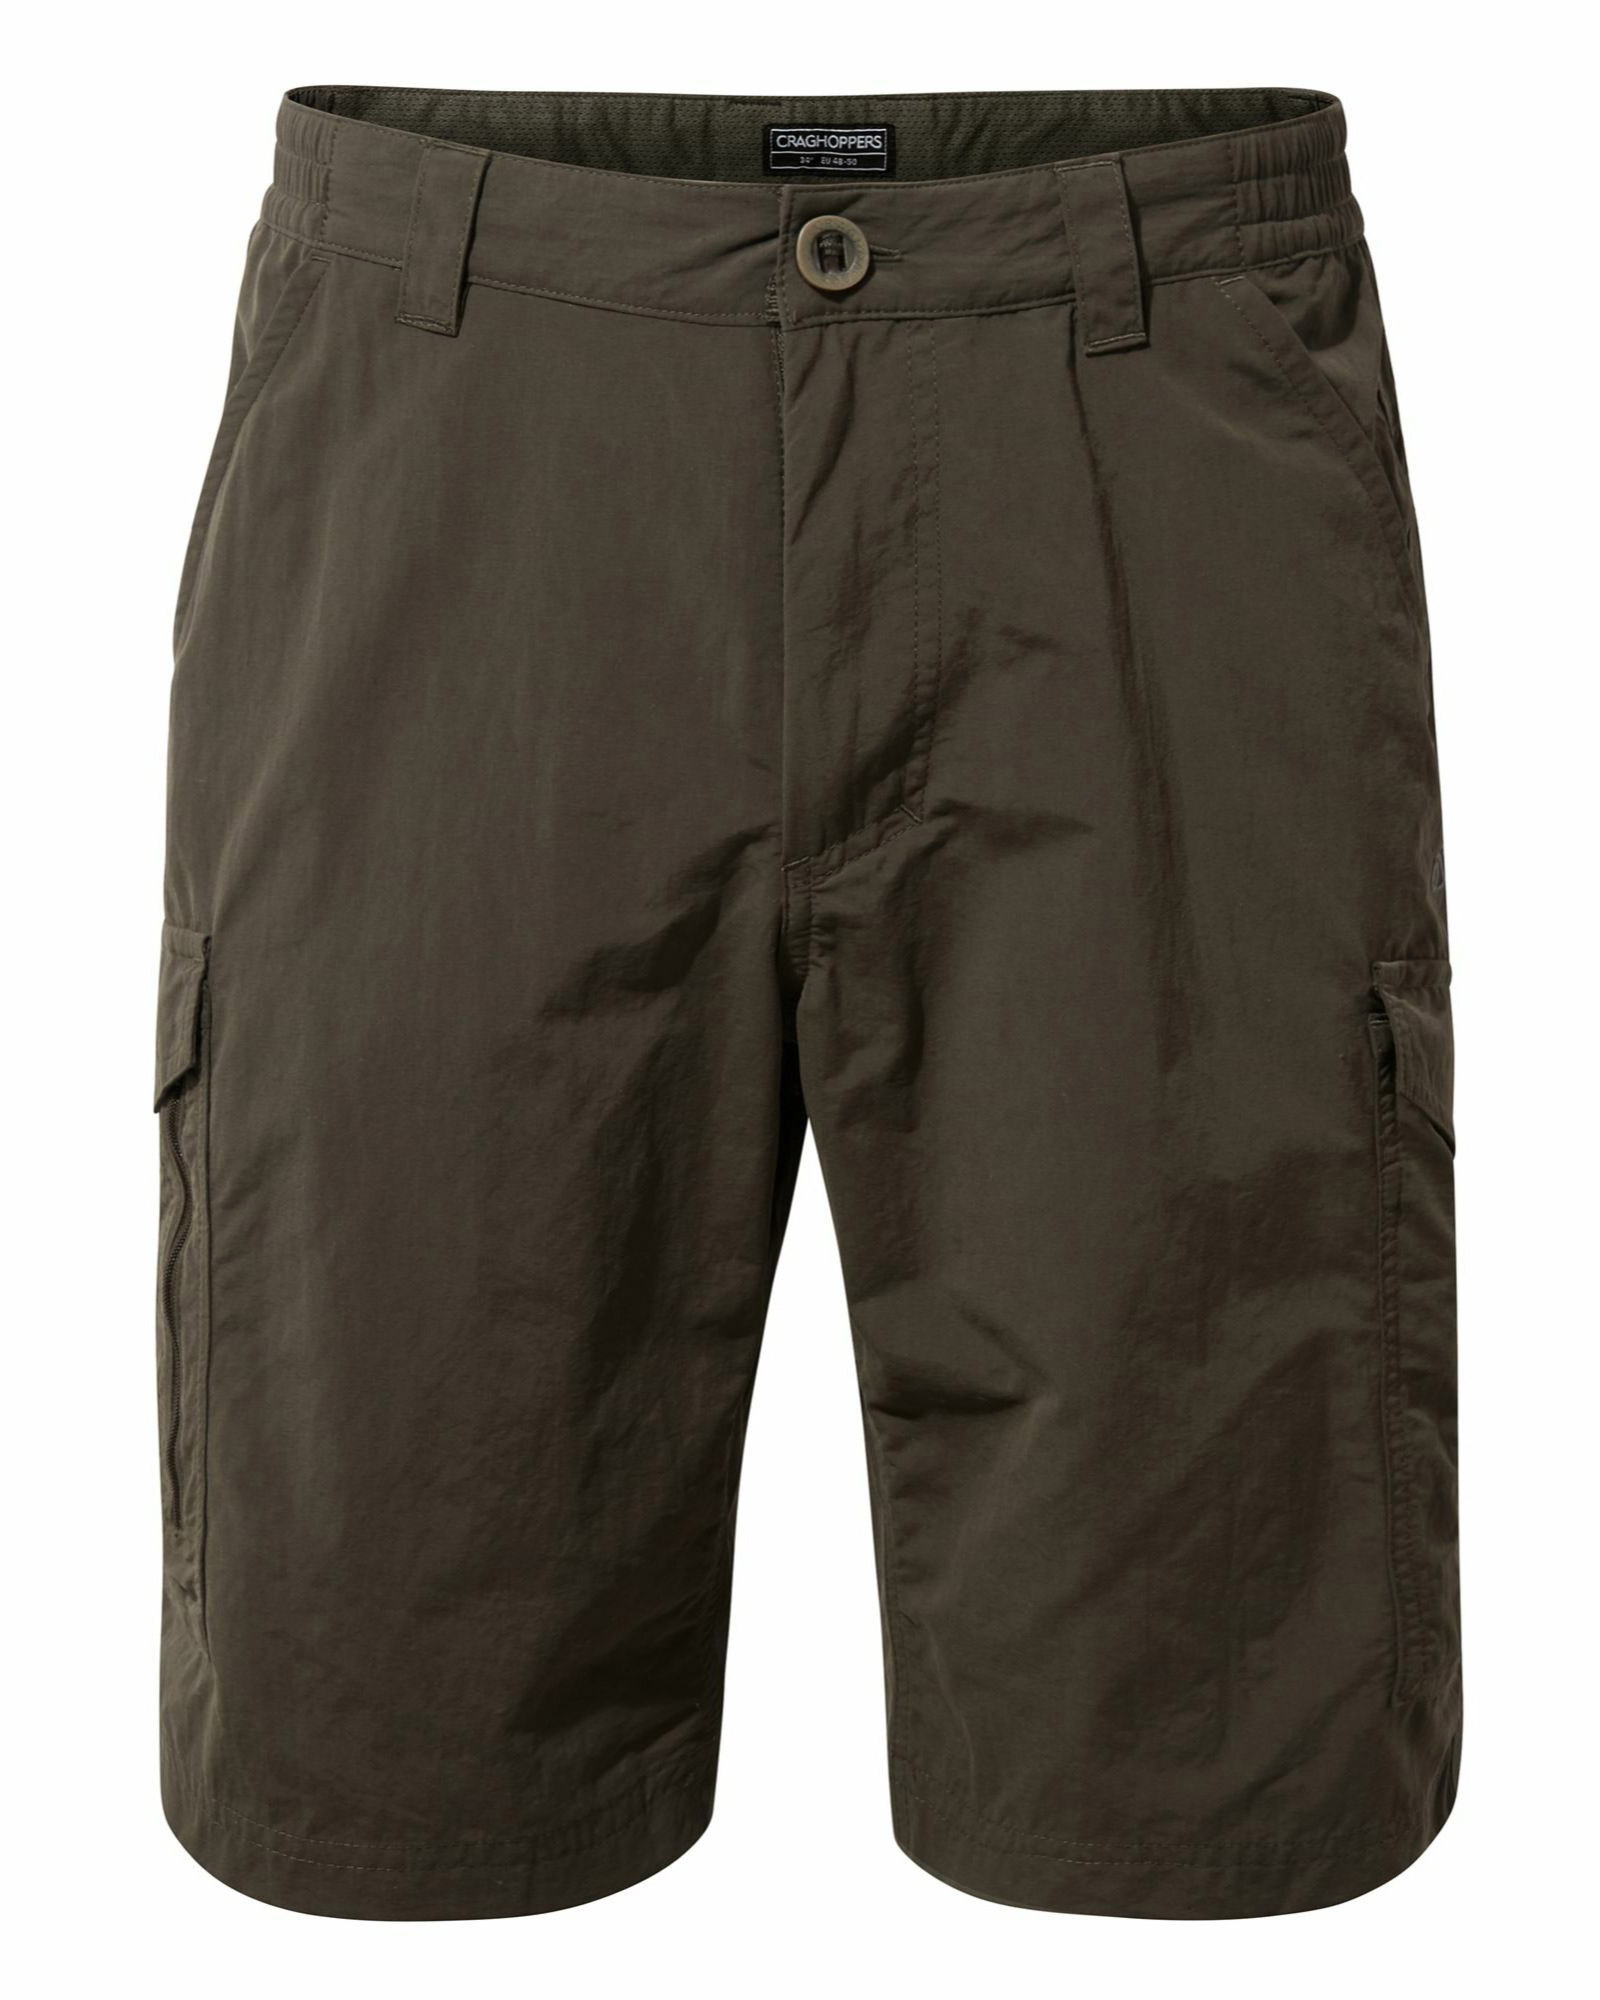 Craghoppers NosiLife Men’s Cargo Shorts - Woodland Green 30"